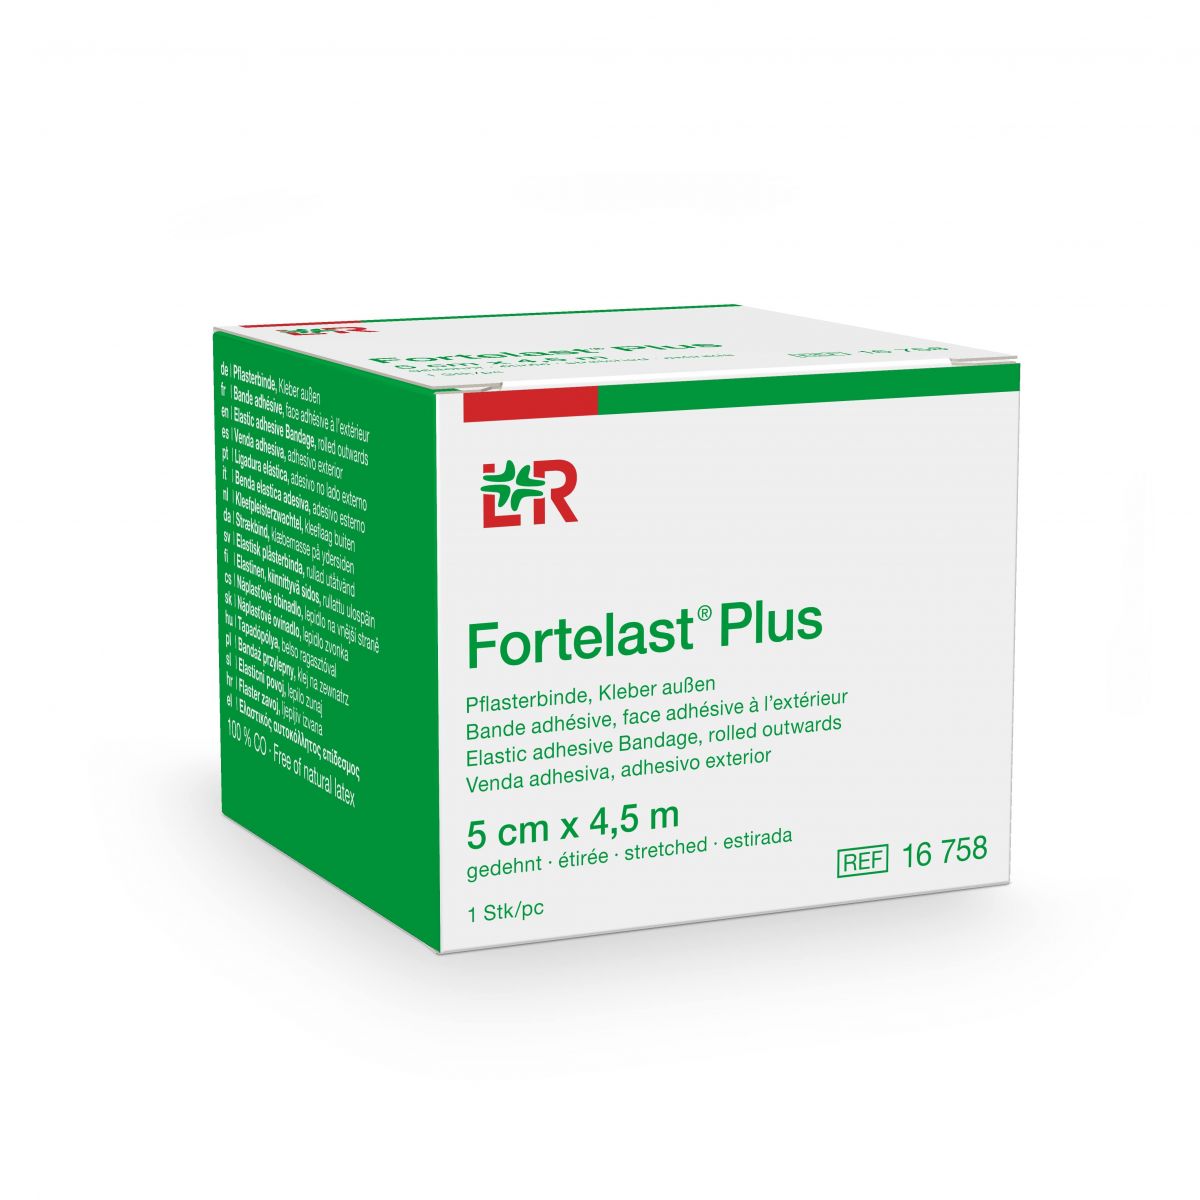 Fortelast® Plus 5 cm x 4,5 m - 1 st